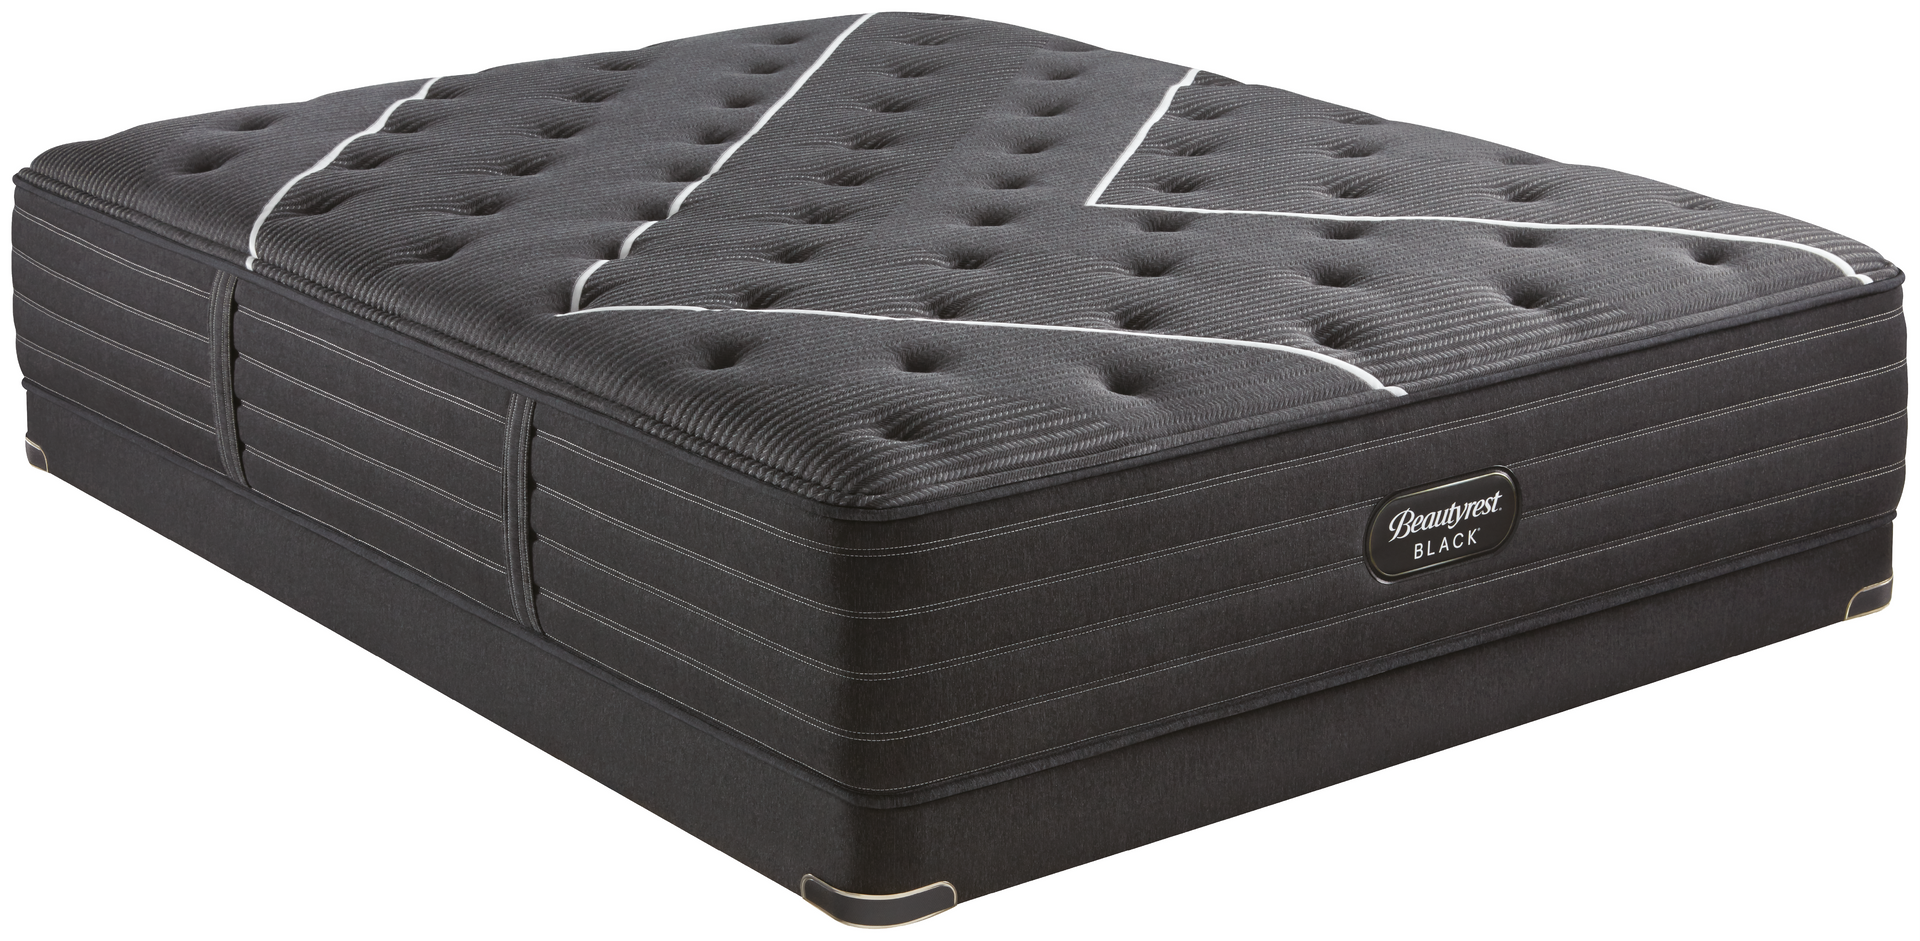 Un colchón negro está sobre una superficie blanca.